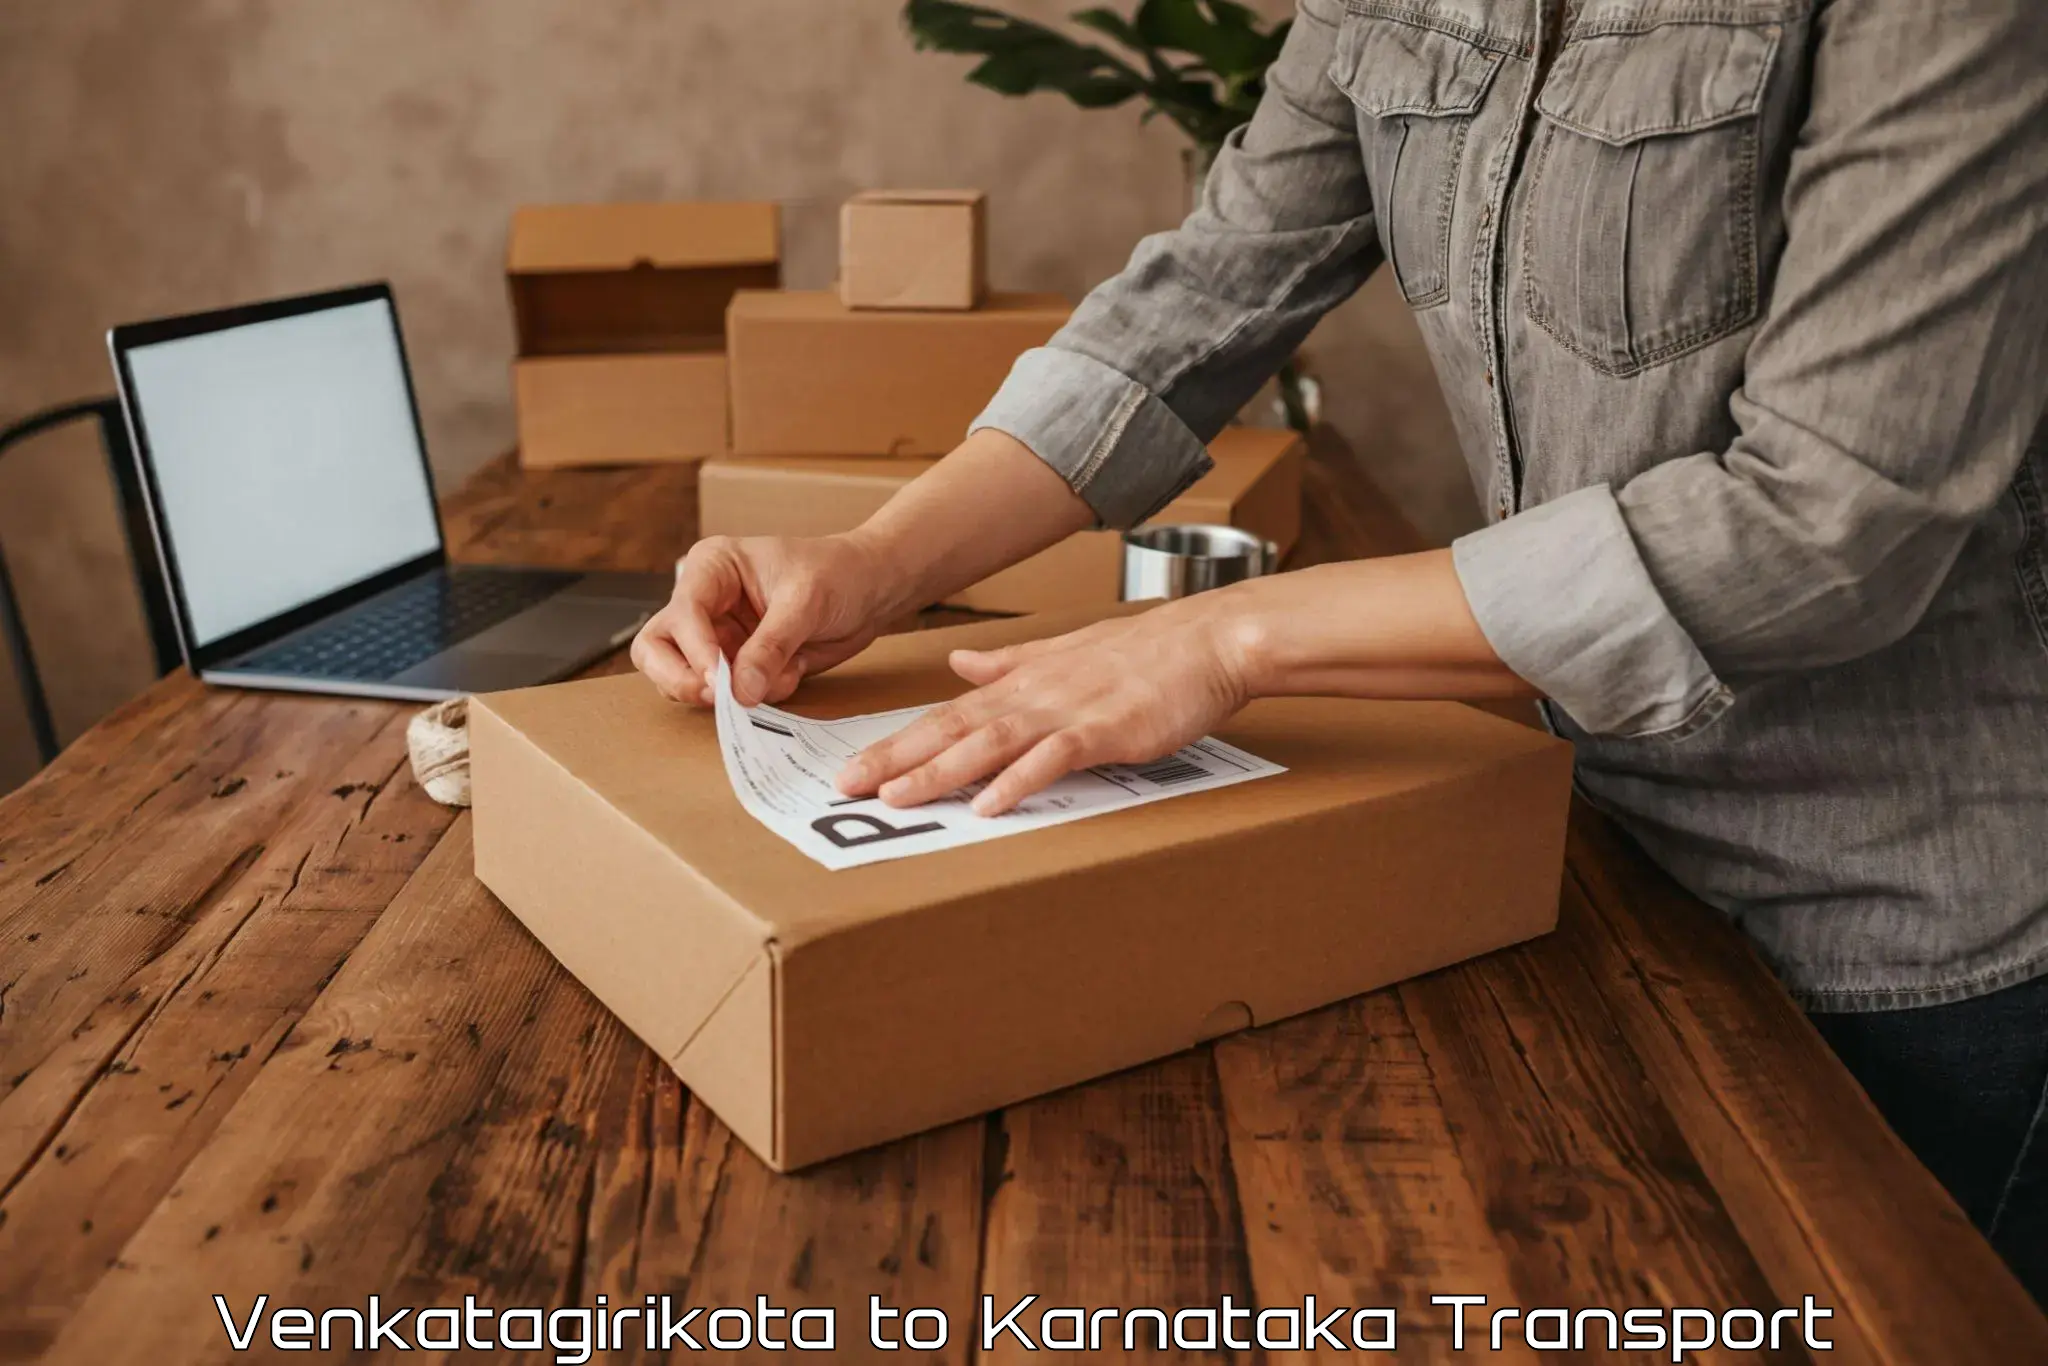 Delivery service Venkatagirikota to Srirangapatna